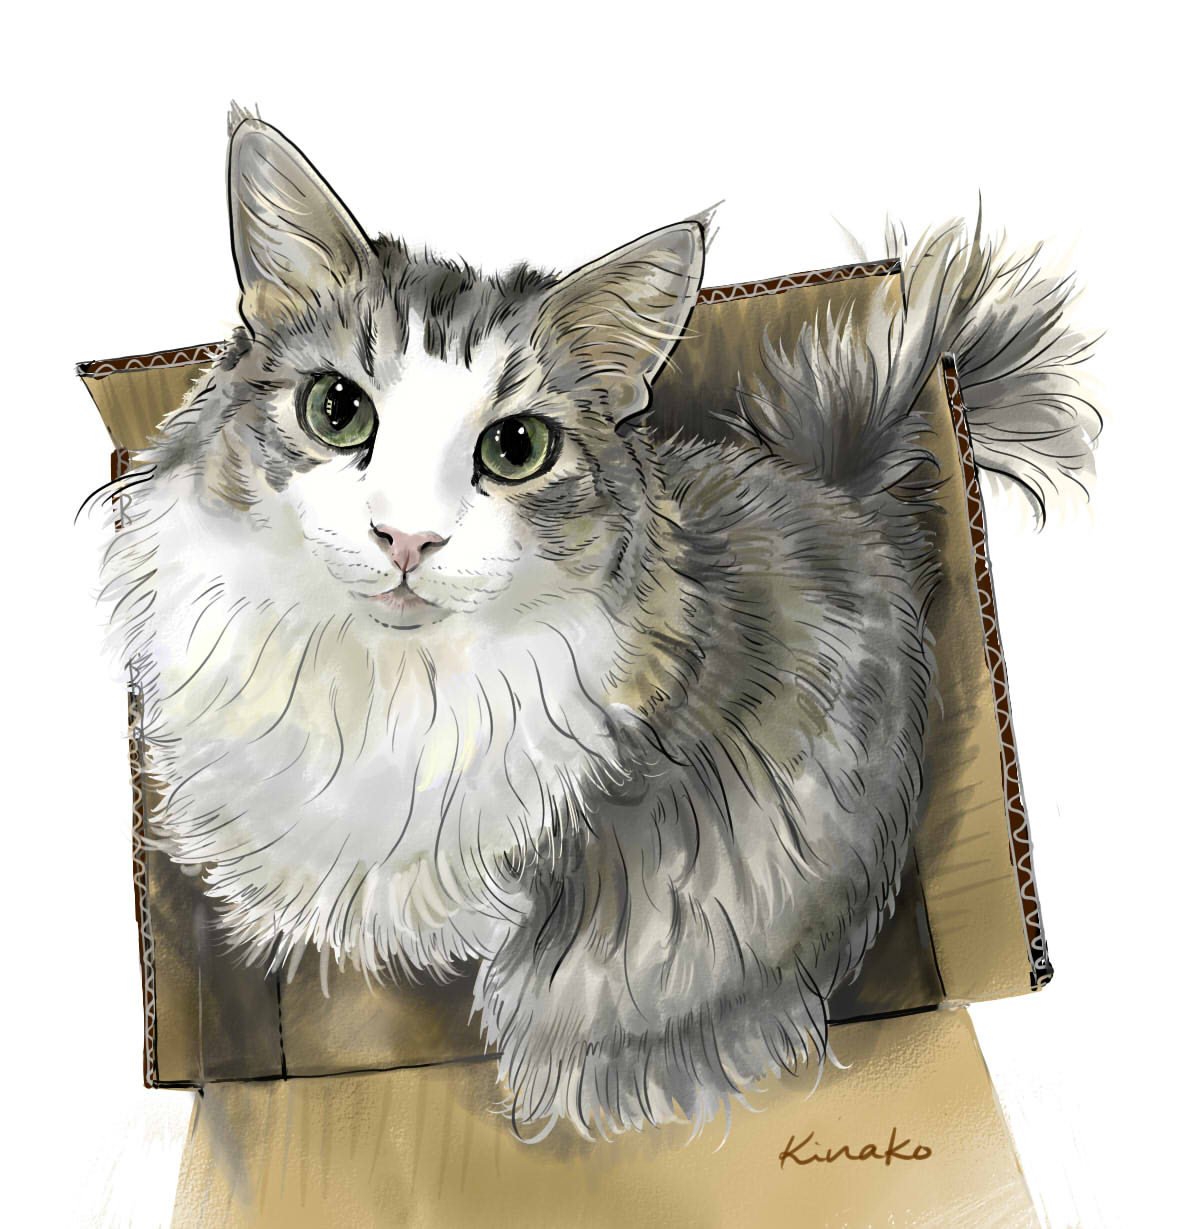 きなこ 猫の絵を描いています Miel Theo 永遠のregulus さんのテオ君 お目目キラキラ の イケメンです 昨日に続いて 段ボールと猫ちゃん のイラストです どうして 猫ってこんなに段ボールが好きなんでしょう T Co Q5xm8wvjaa Twitter